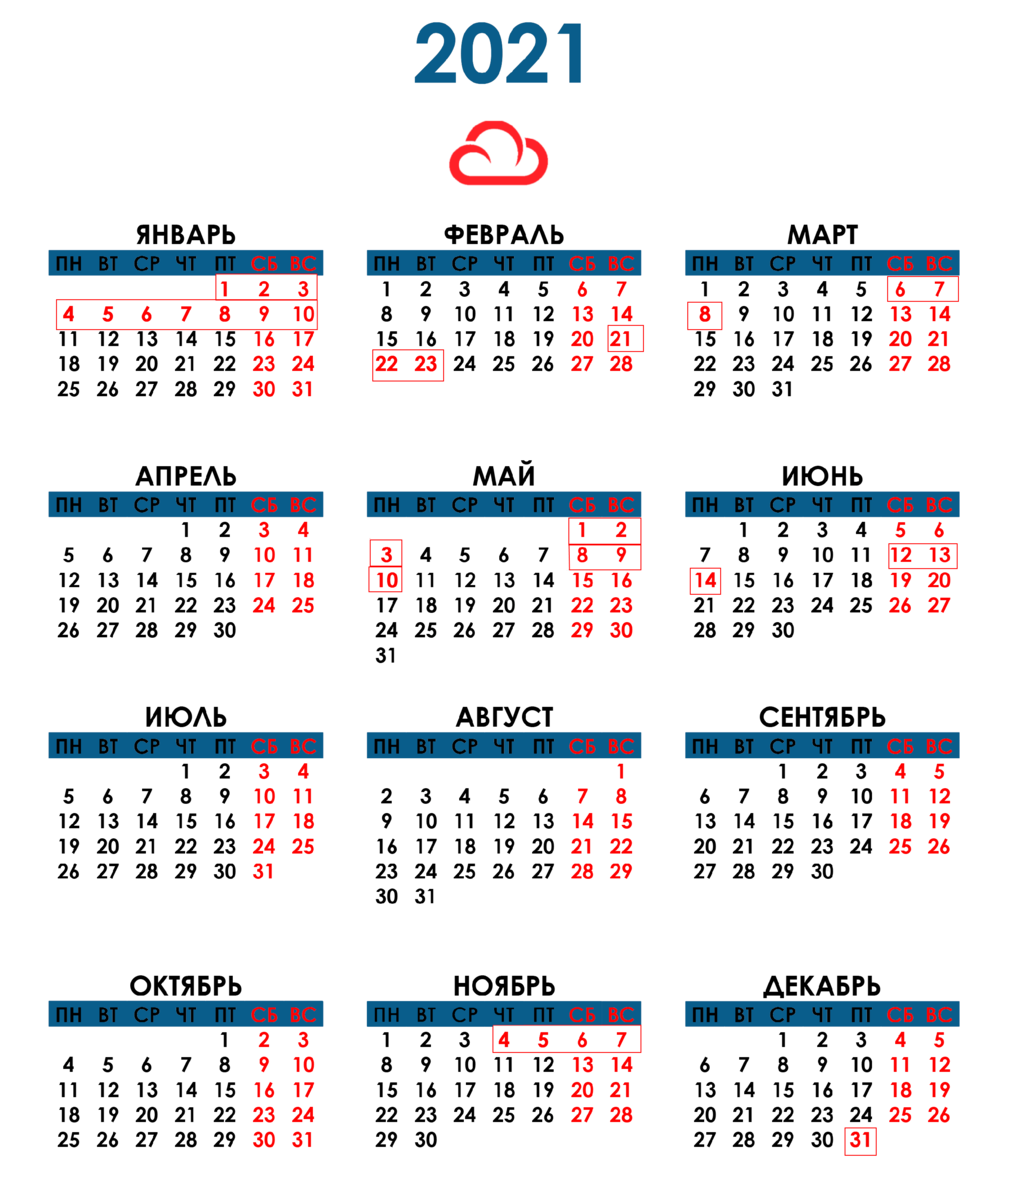 Выходные трудовой календарь. Производственный календарь 2021 года с праздничными днями. Производственный календарь на 2021 год с праздниками и выходными. Праздничные дни в 2021 году производственный календарь. Календарь 2021 года с праздничными днями и выходными.